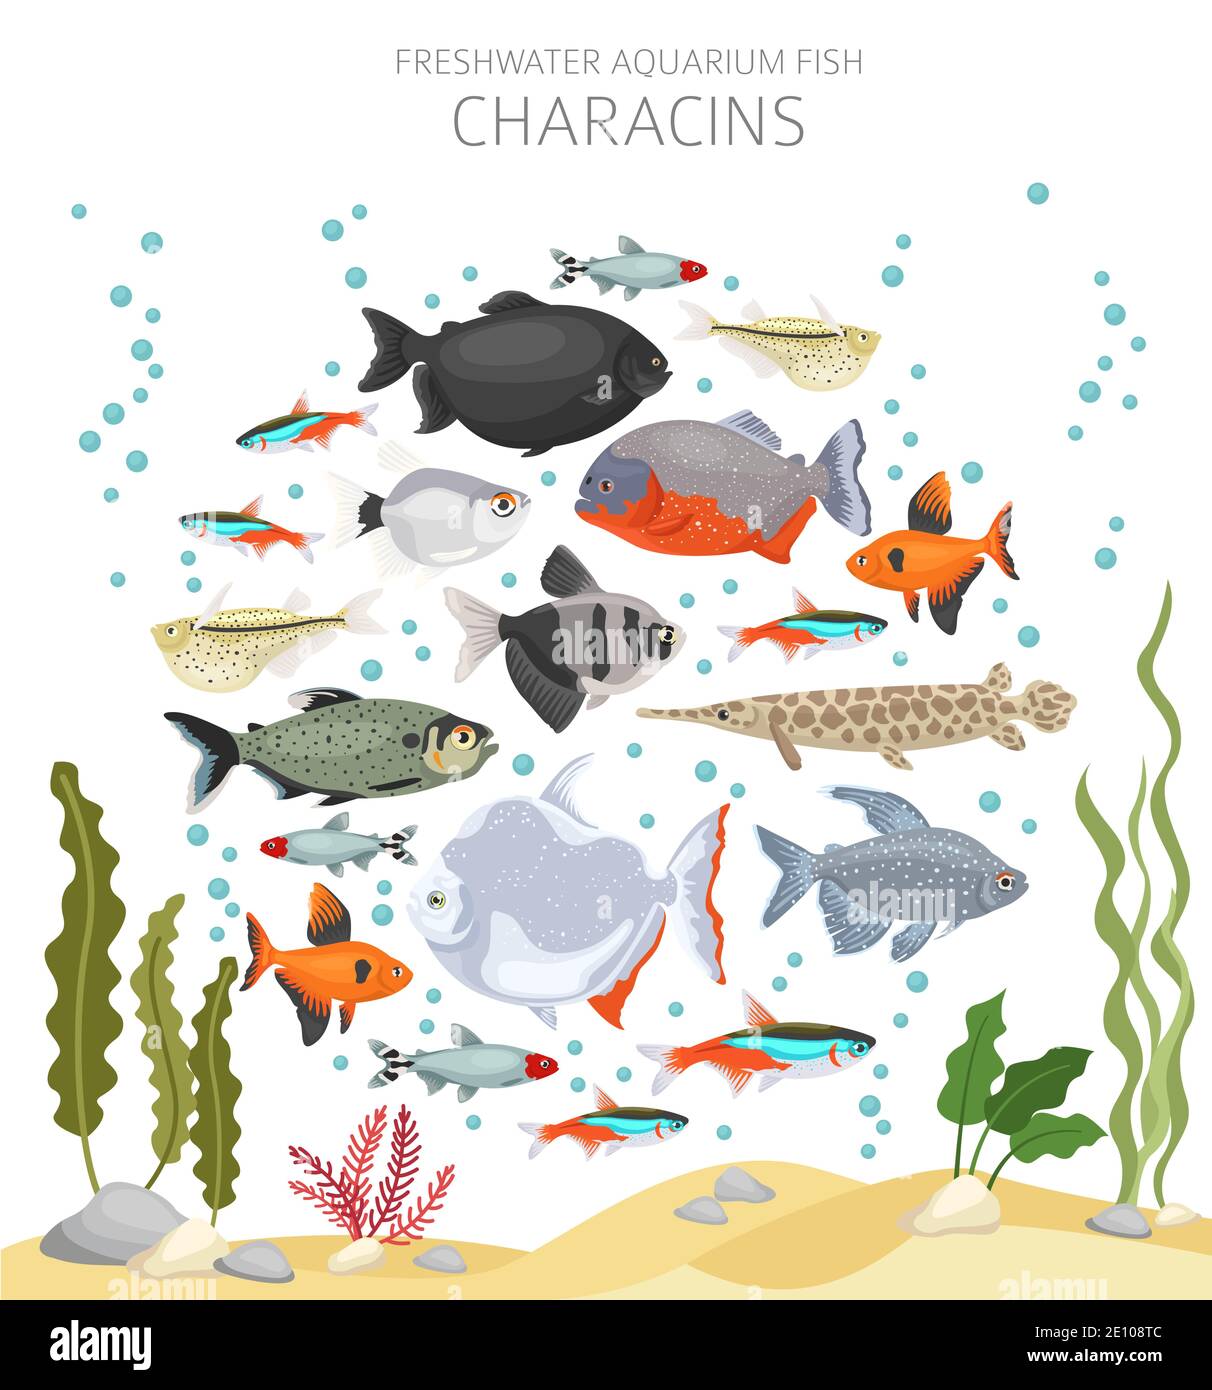 Pesci Characins. Acquario d'acqua dolce icona di pesce Set stile piatto isolato su bianco. Illustrazione vettoriale Illustrazione Vettoriale